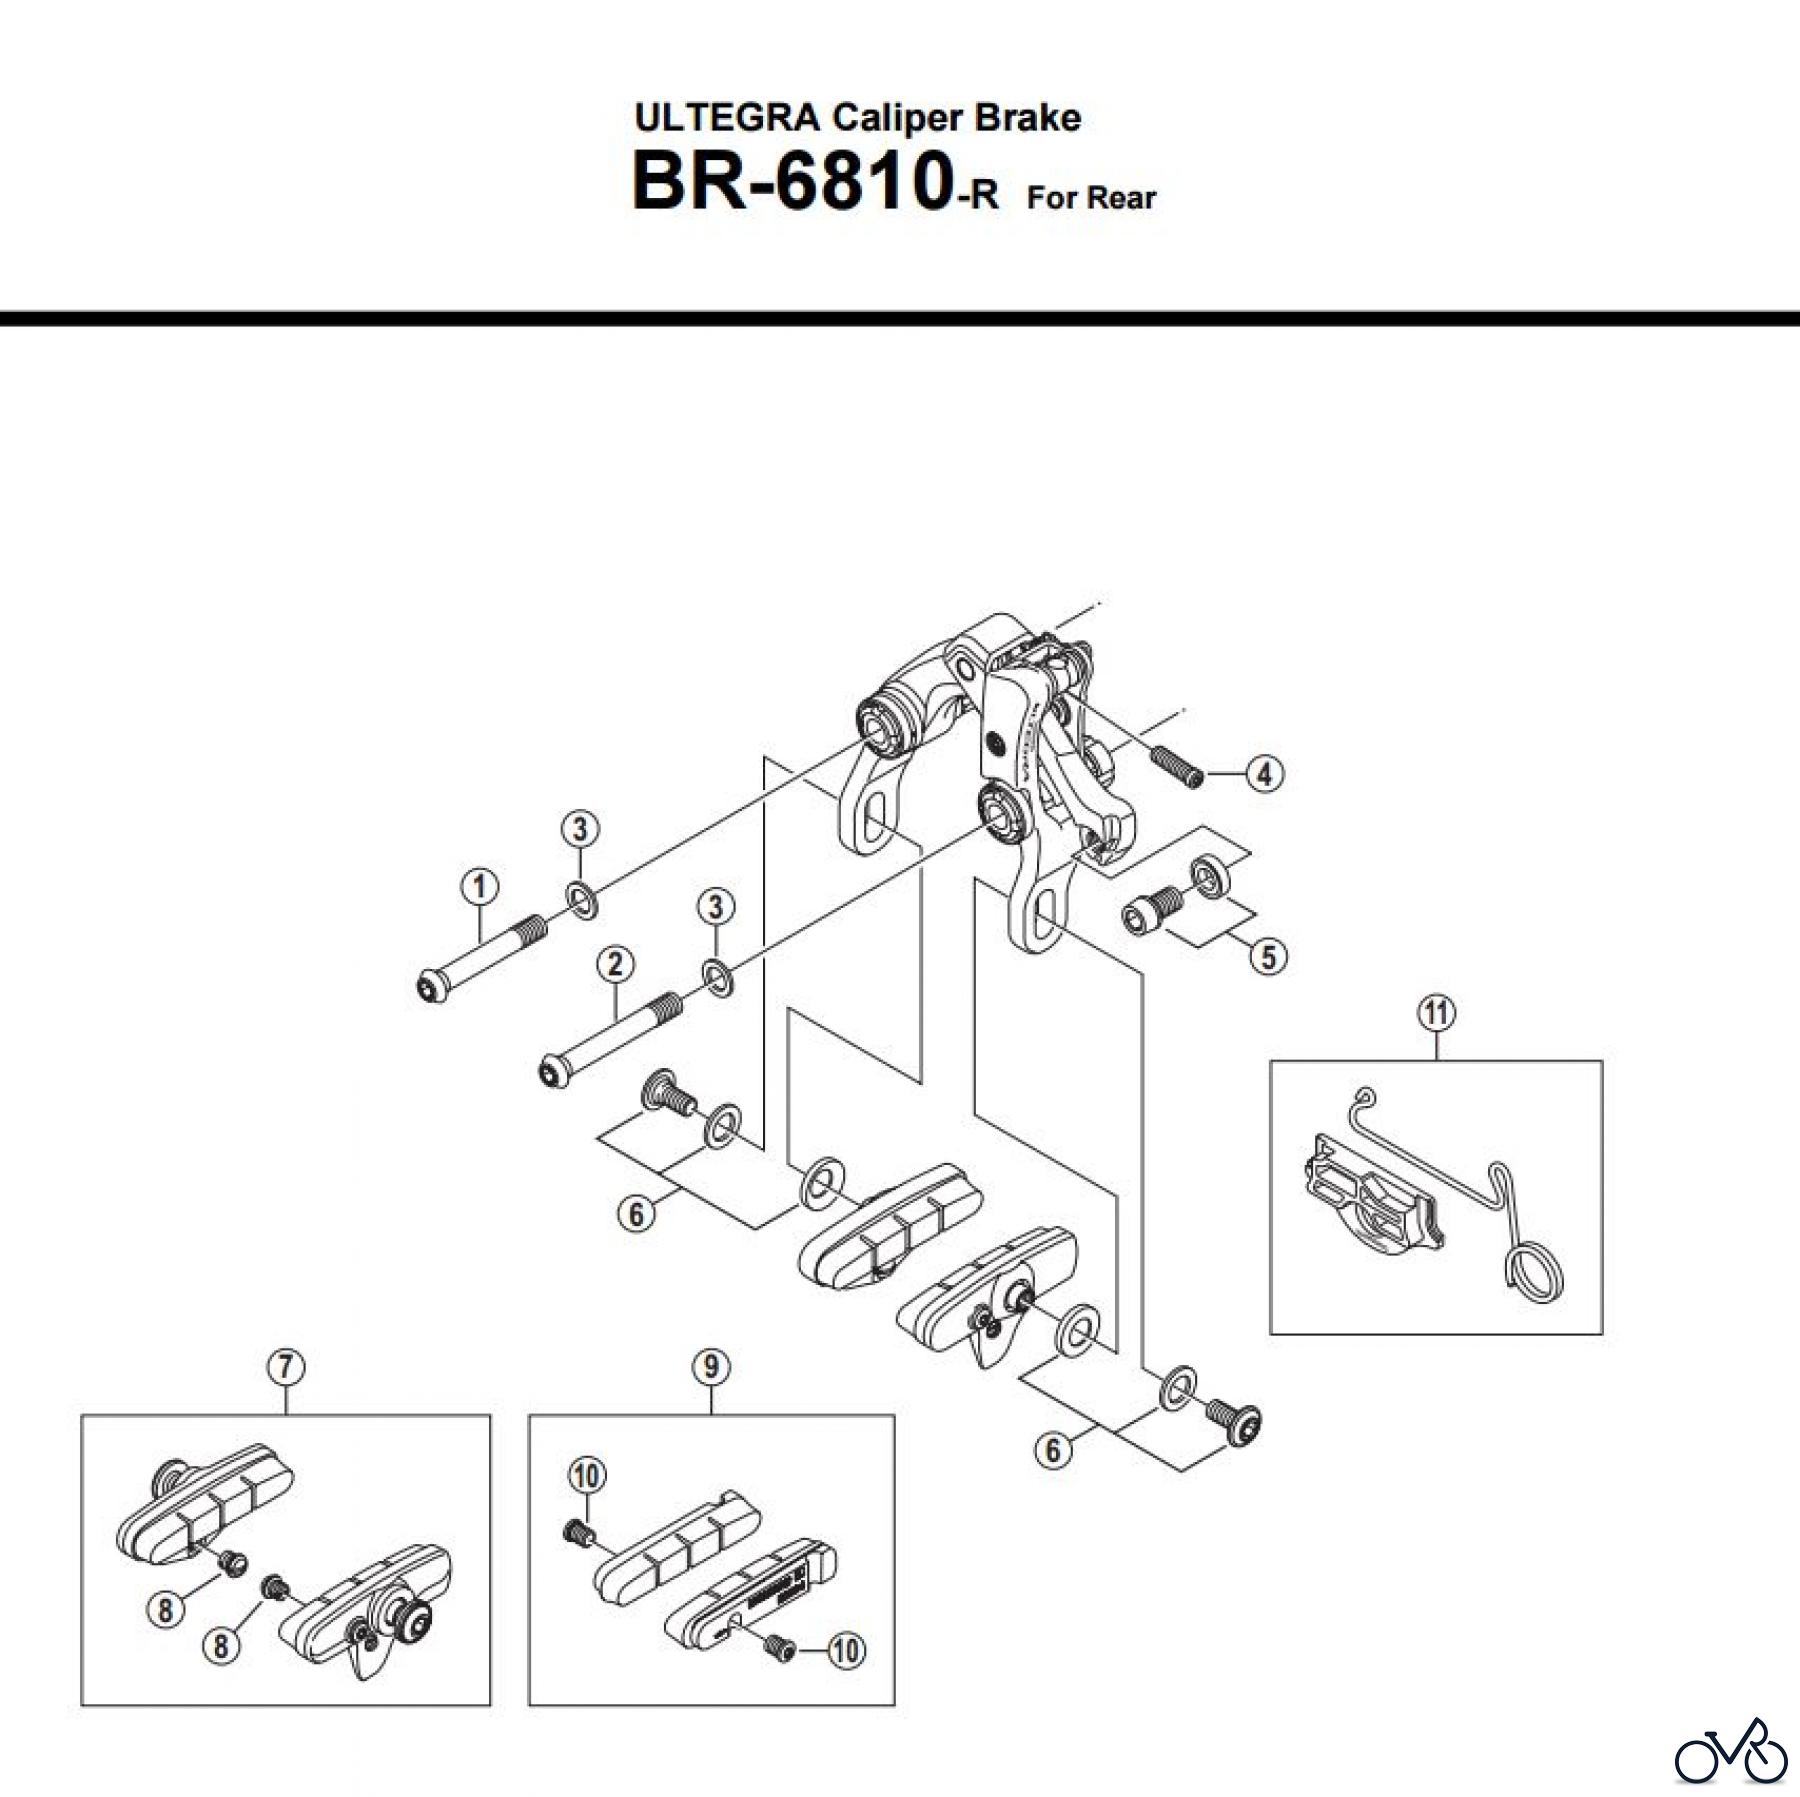  Shimano BR Brake - Bremse BR-6810-R -3601 ULTEGRA Caliper Brake